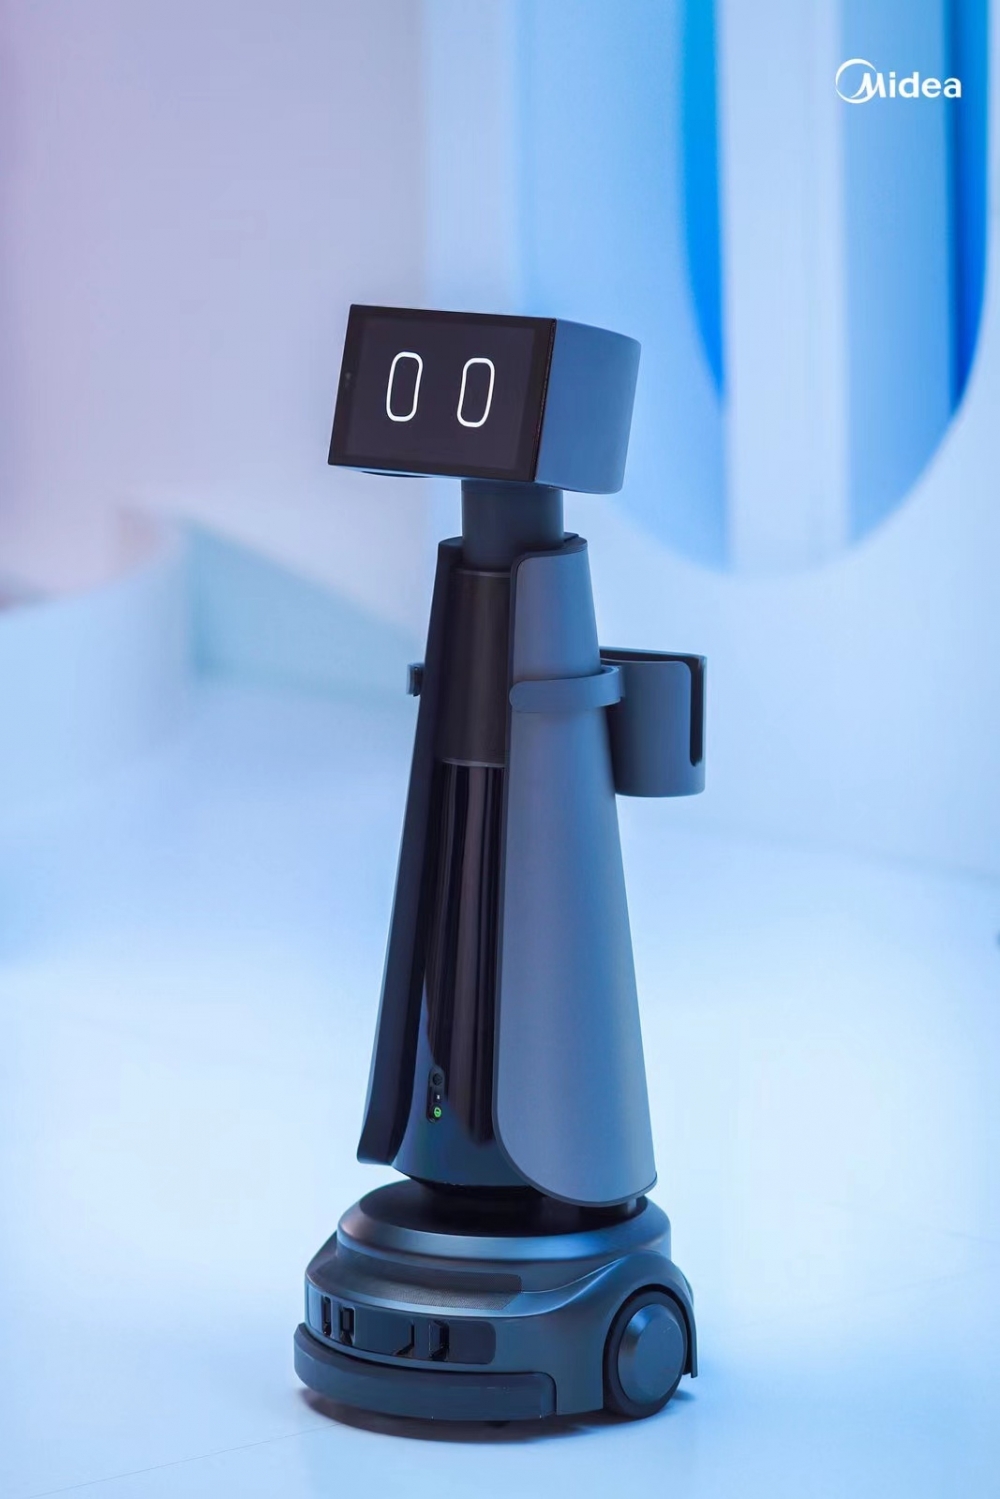 美的高調入局服務機器人賽道 推新品牌“WISHUG” 搶占未來家庭物聯網智能中樞